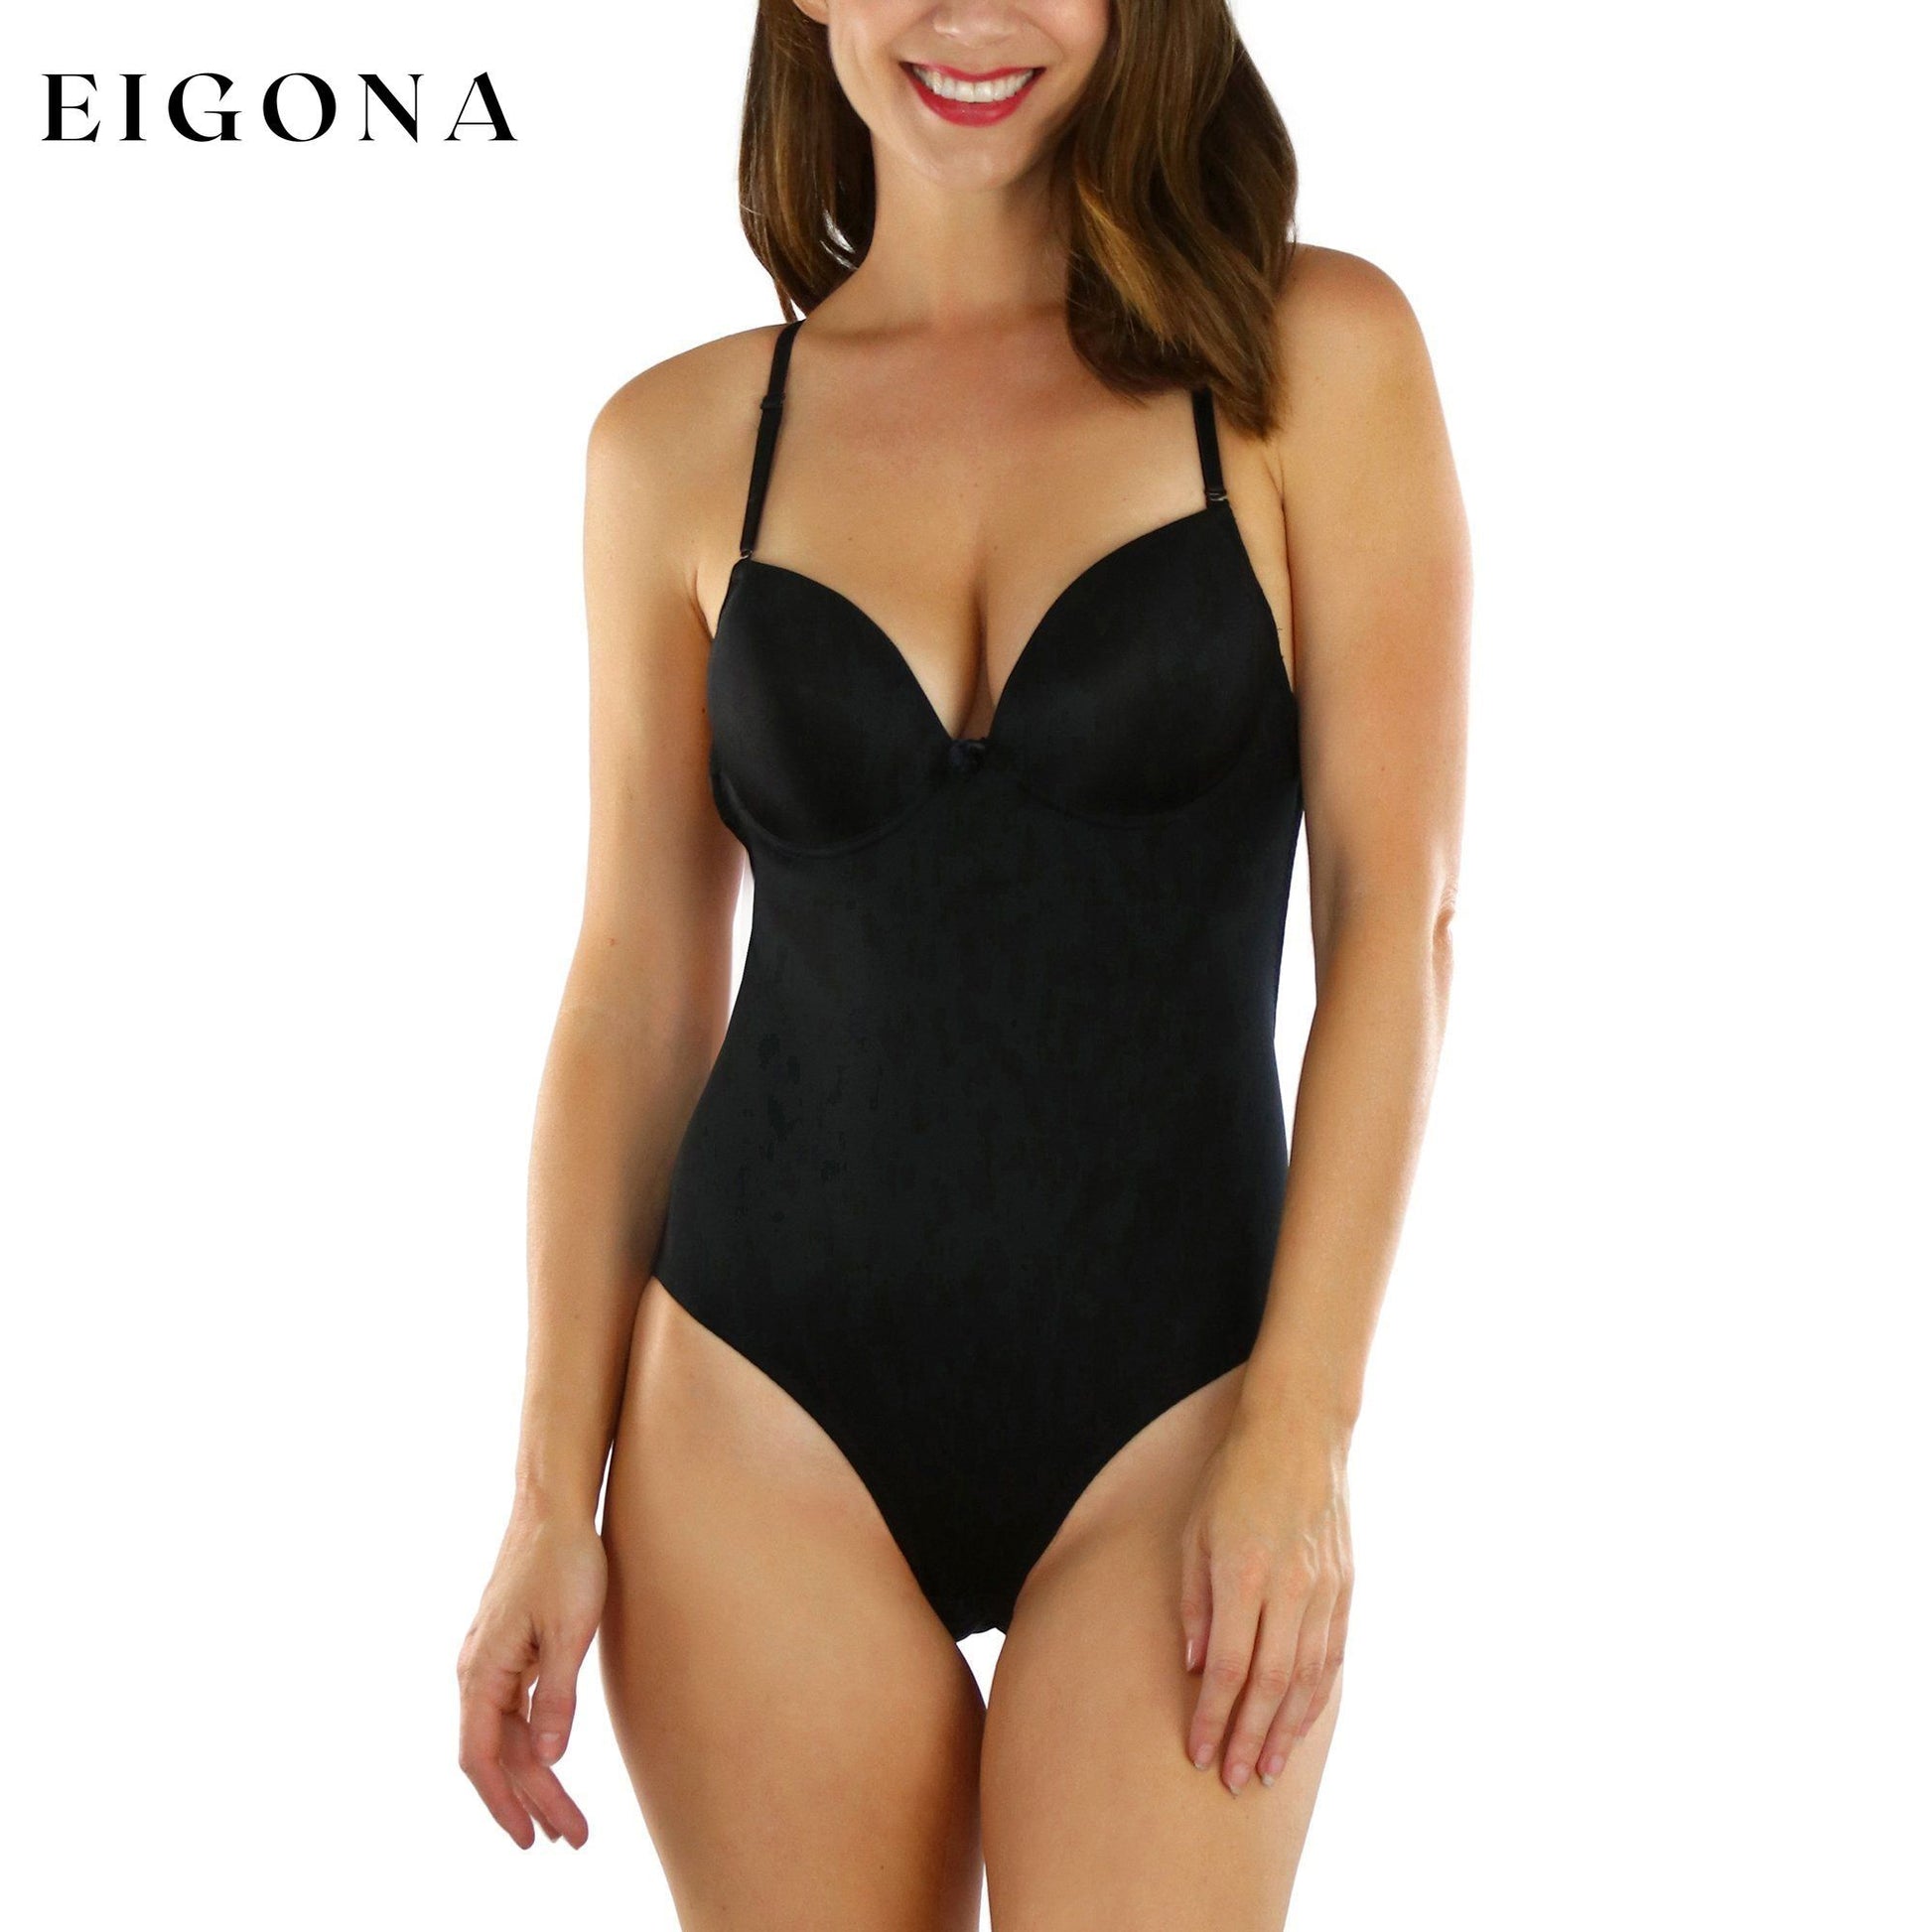 Women's Thong or Bikini Backless Body Shaper Black Bikini Shaper __stock:250 lingerie refund_fee:1200